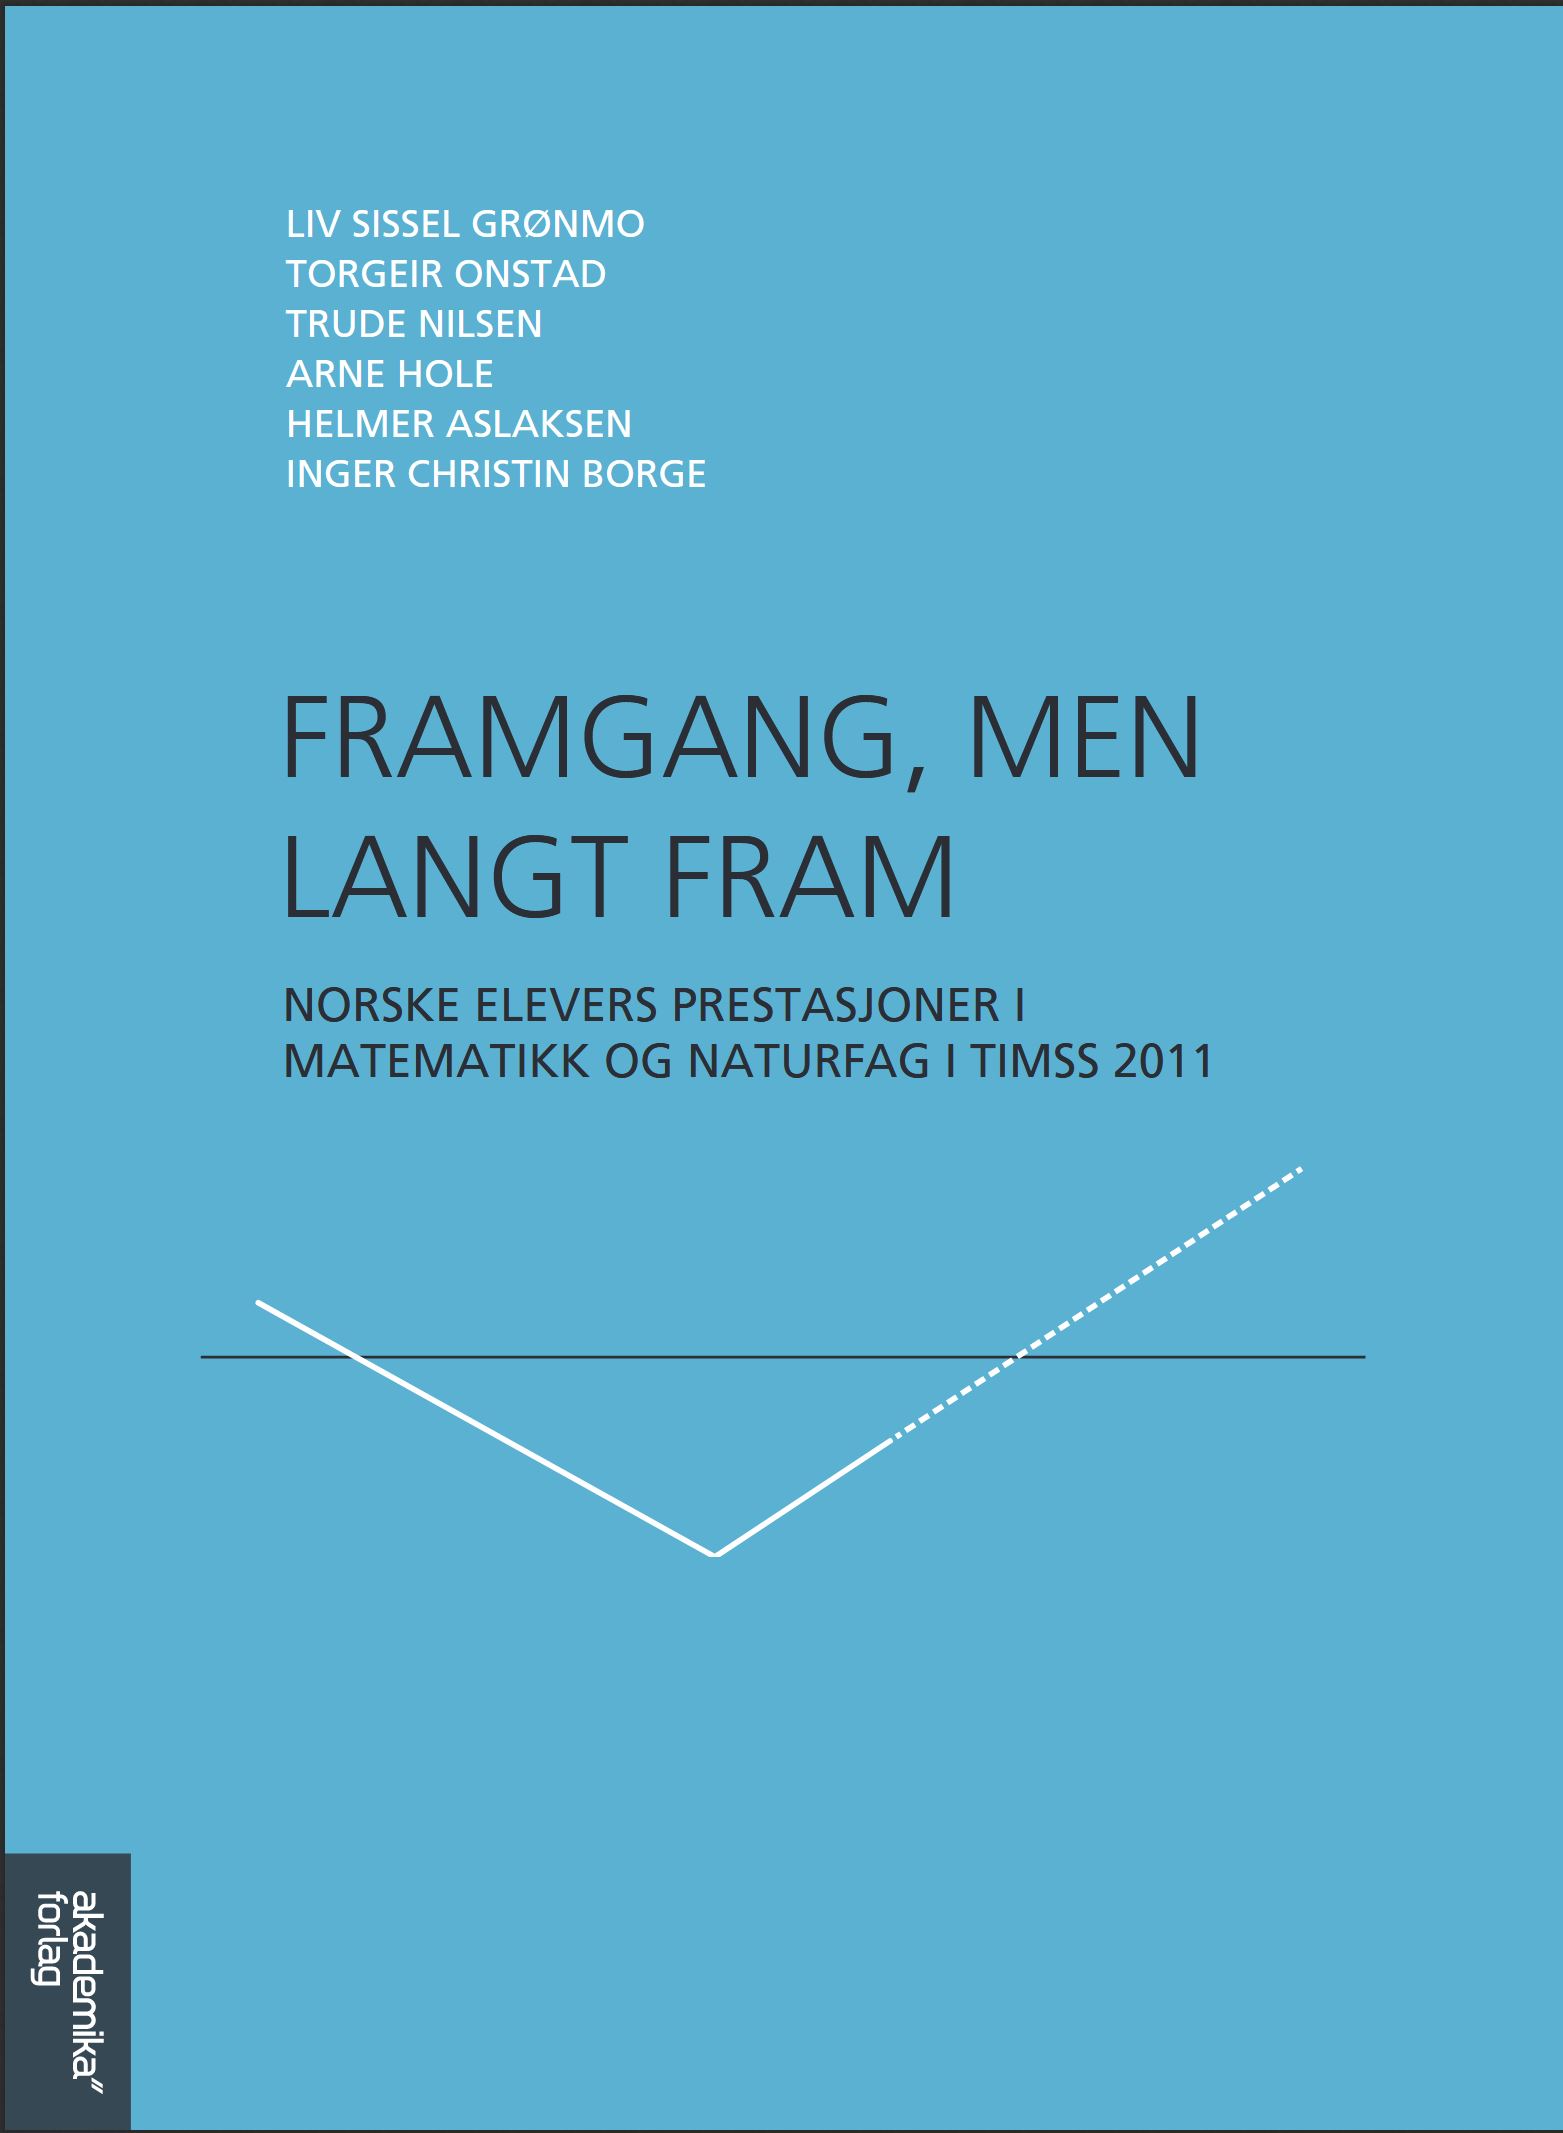 Forside for rapporten TIMSS 2011. (Forside Akademika forlag)